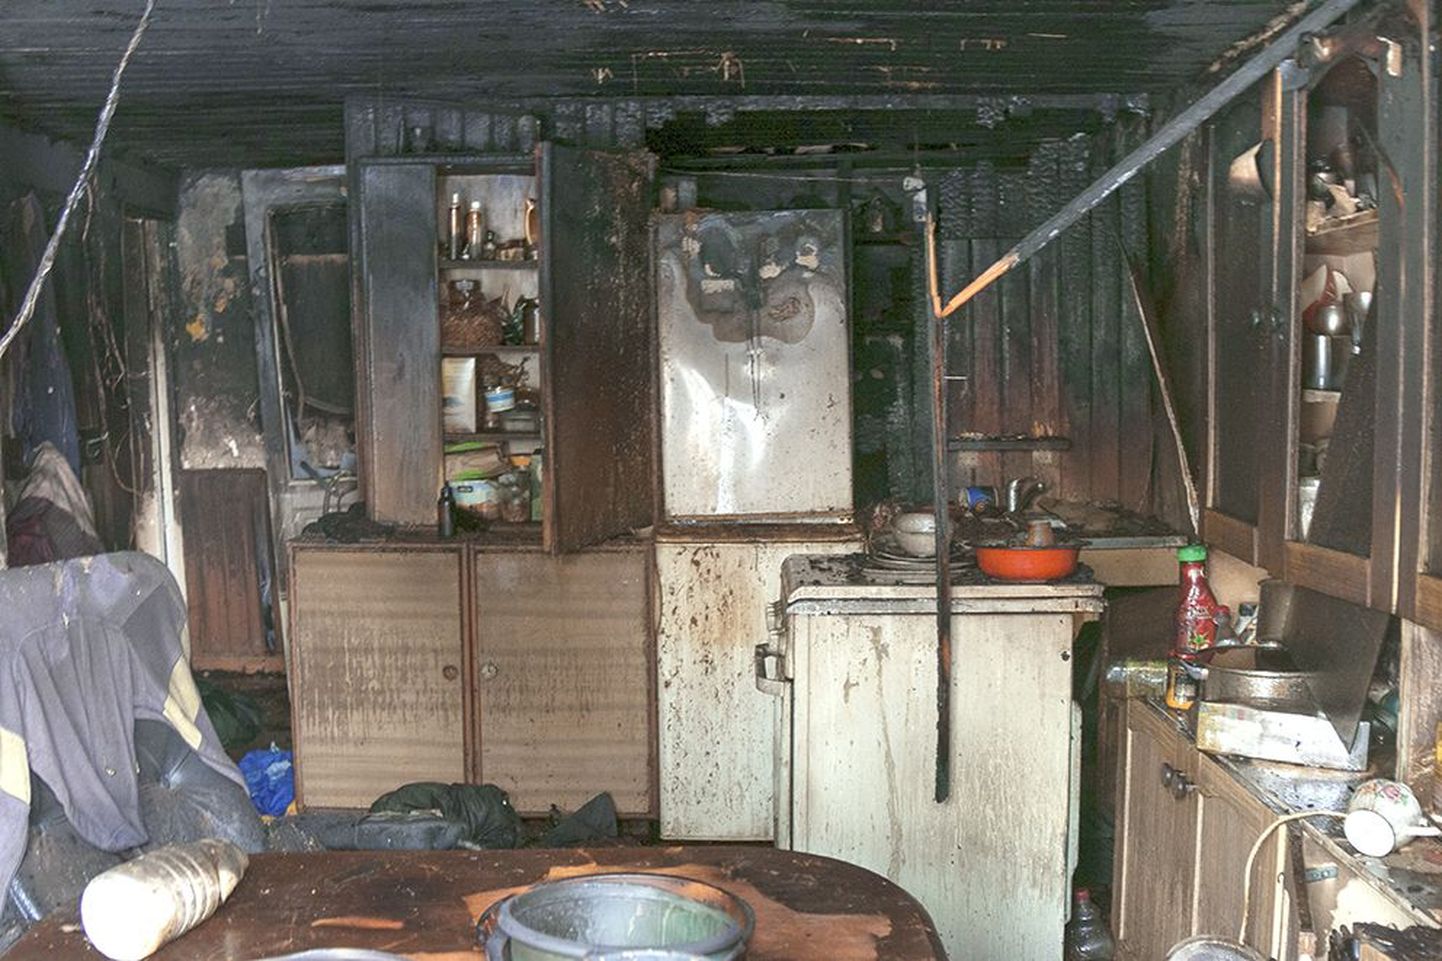 Külmikust alguse saanud tulekahju muutis köögi kasutamiskõlbmatuks. Pererahvas pääses õnneks õigel ajal majast välja ja perepea usub, et kinnine köögiuks oli see, mis neid hullemast päästis.